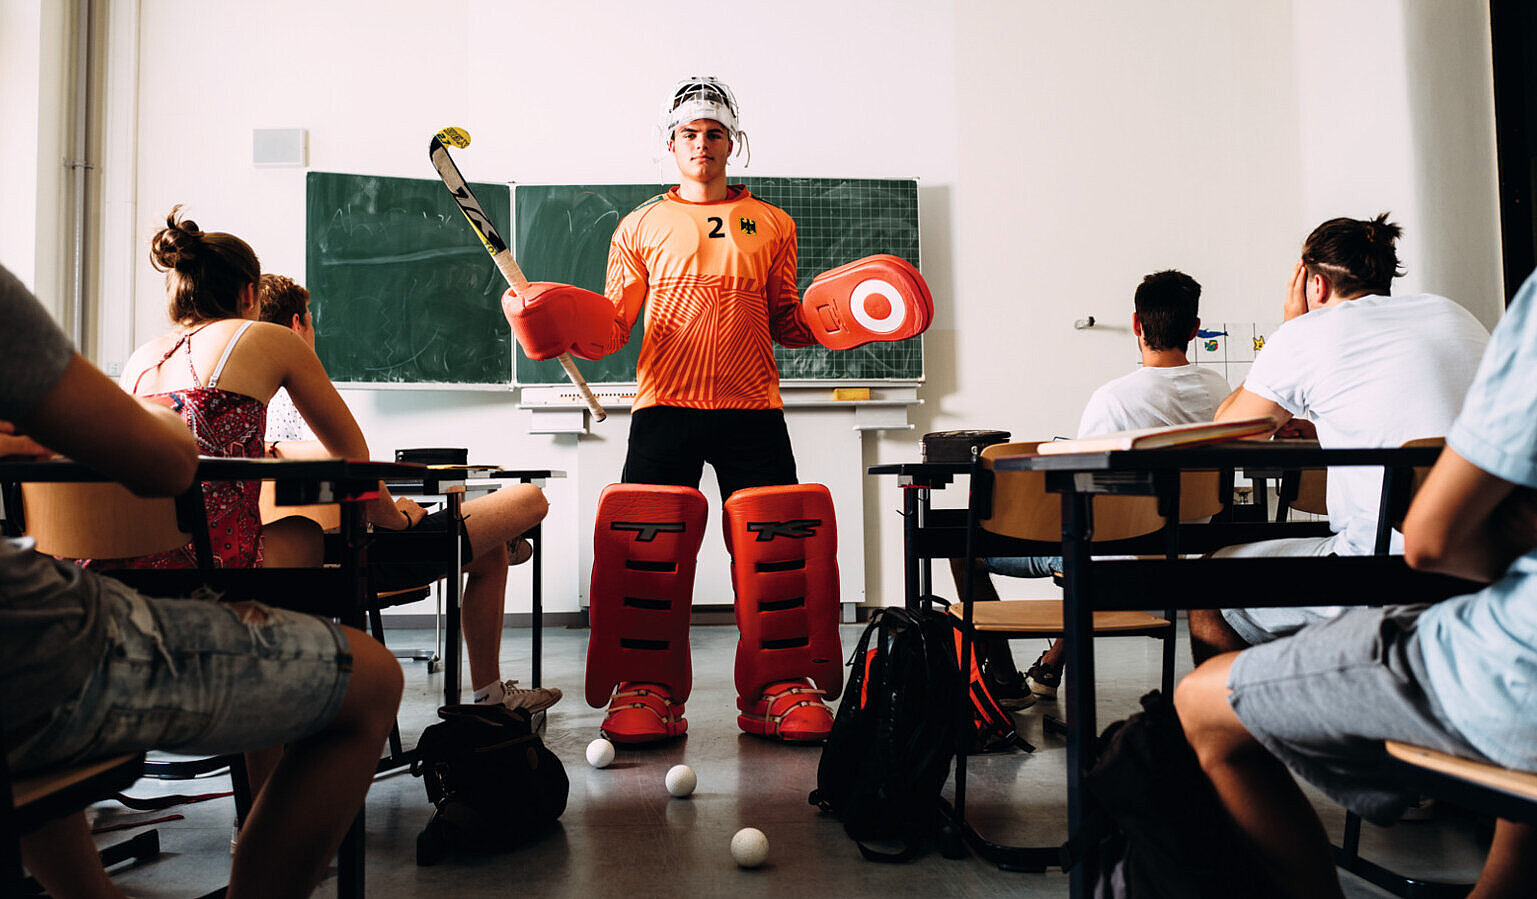 Alexander Stadler: Zwischen Klassenzimmer und Hockeyplatz